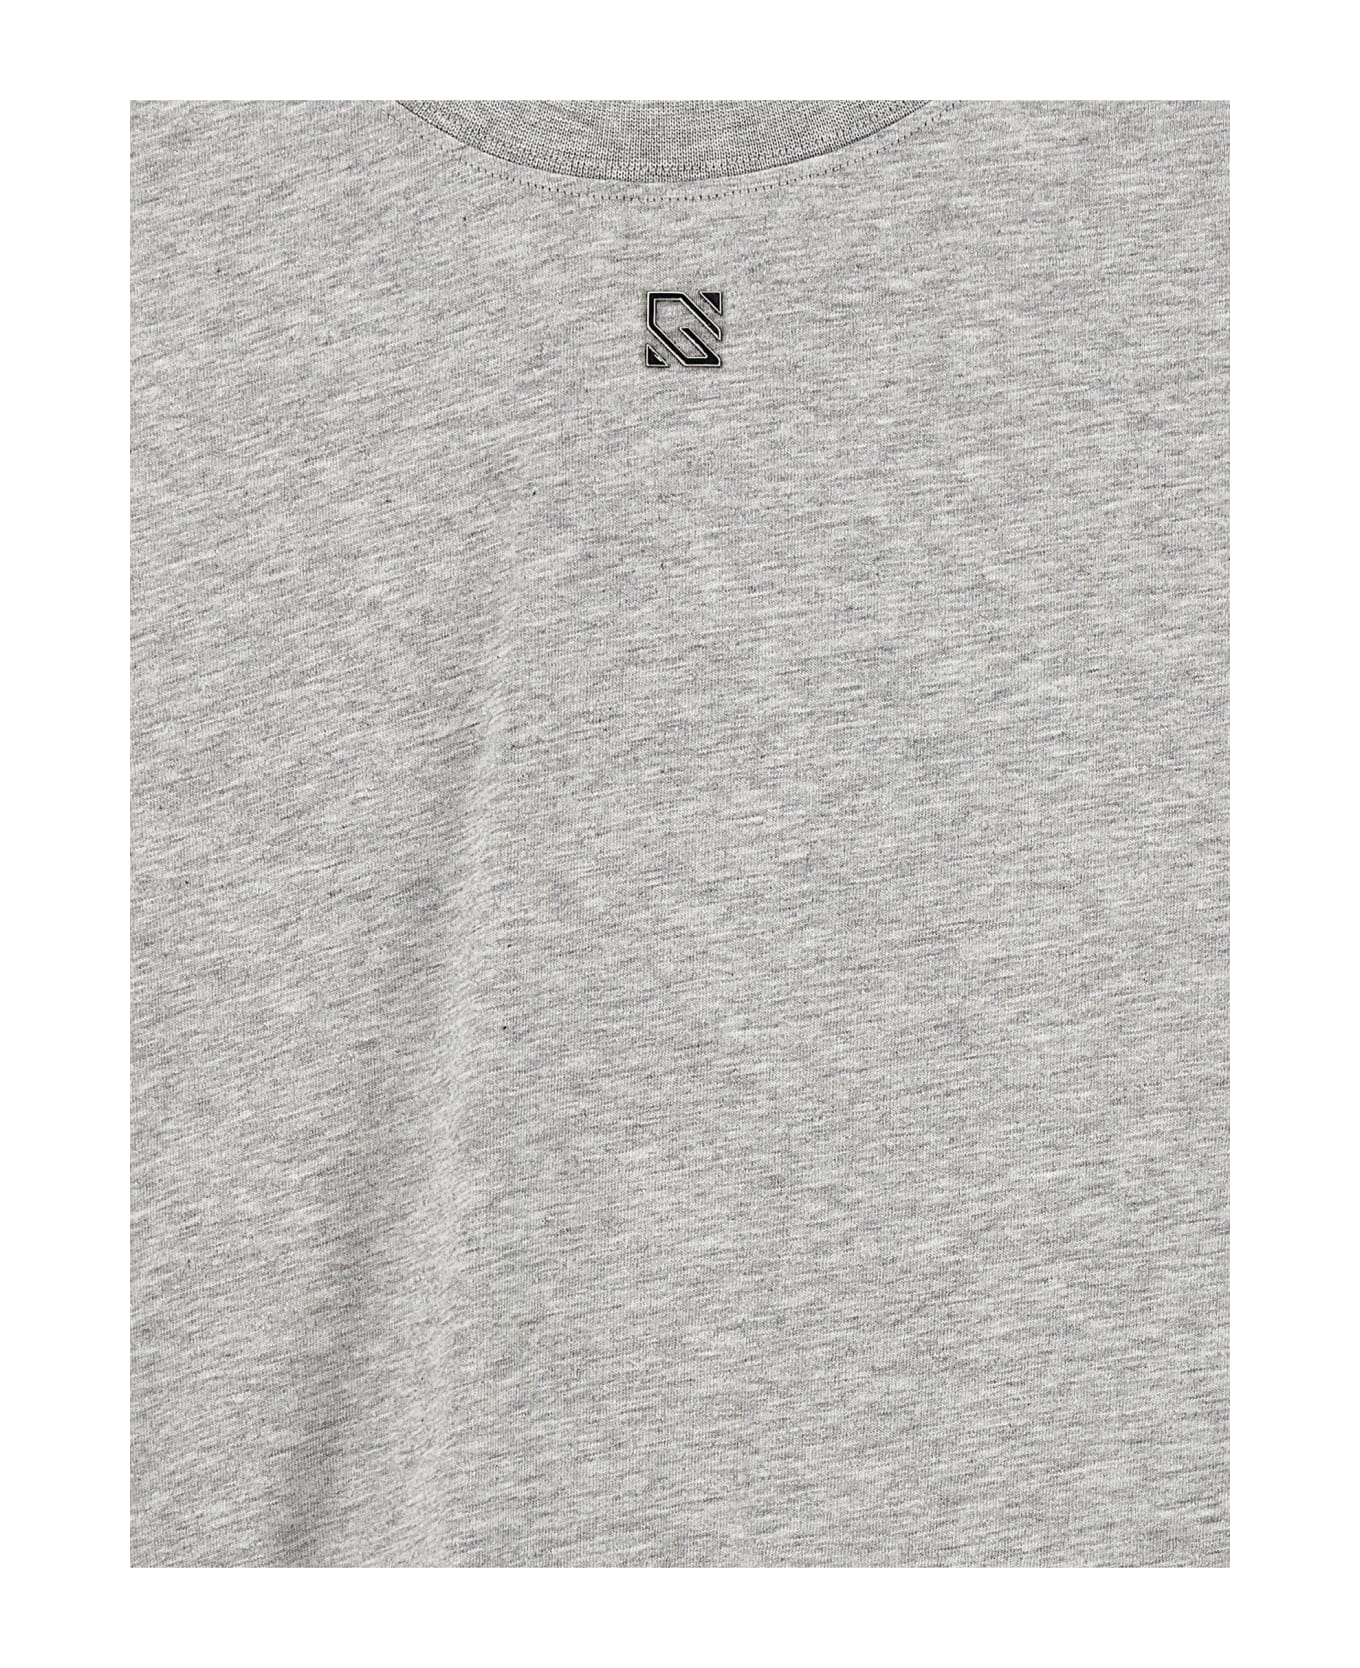 Giuseppe di Morabito Crystal Sleeves T-shirt - Gray